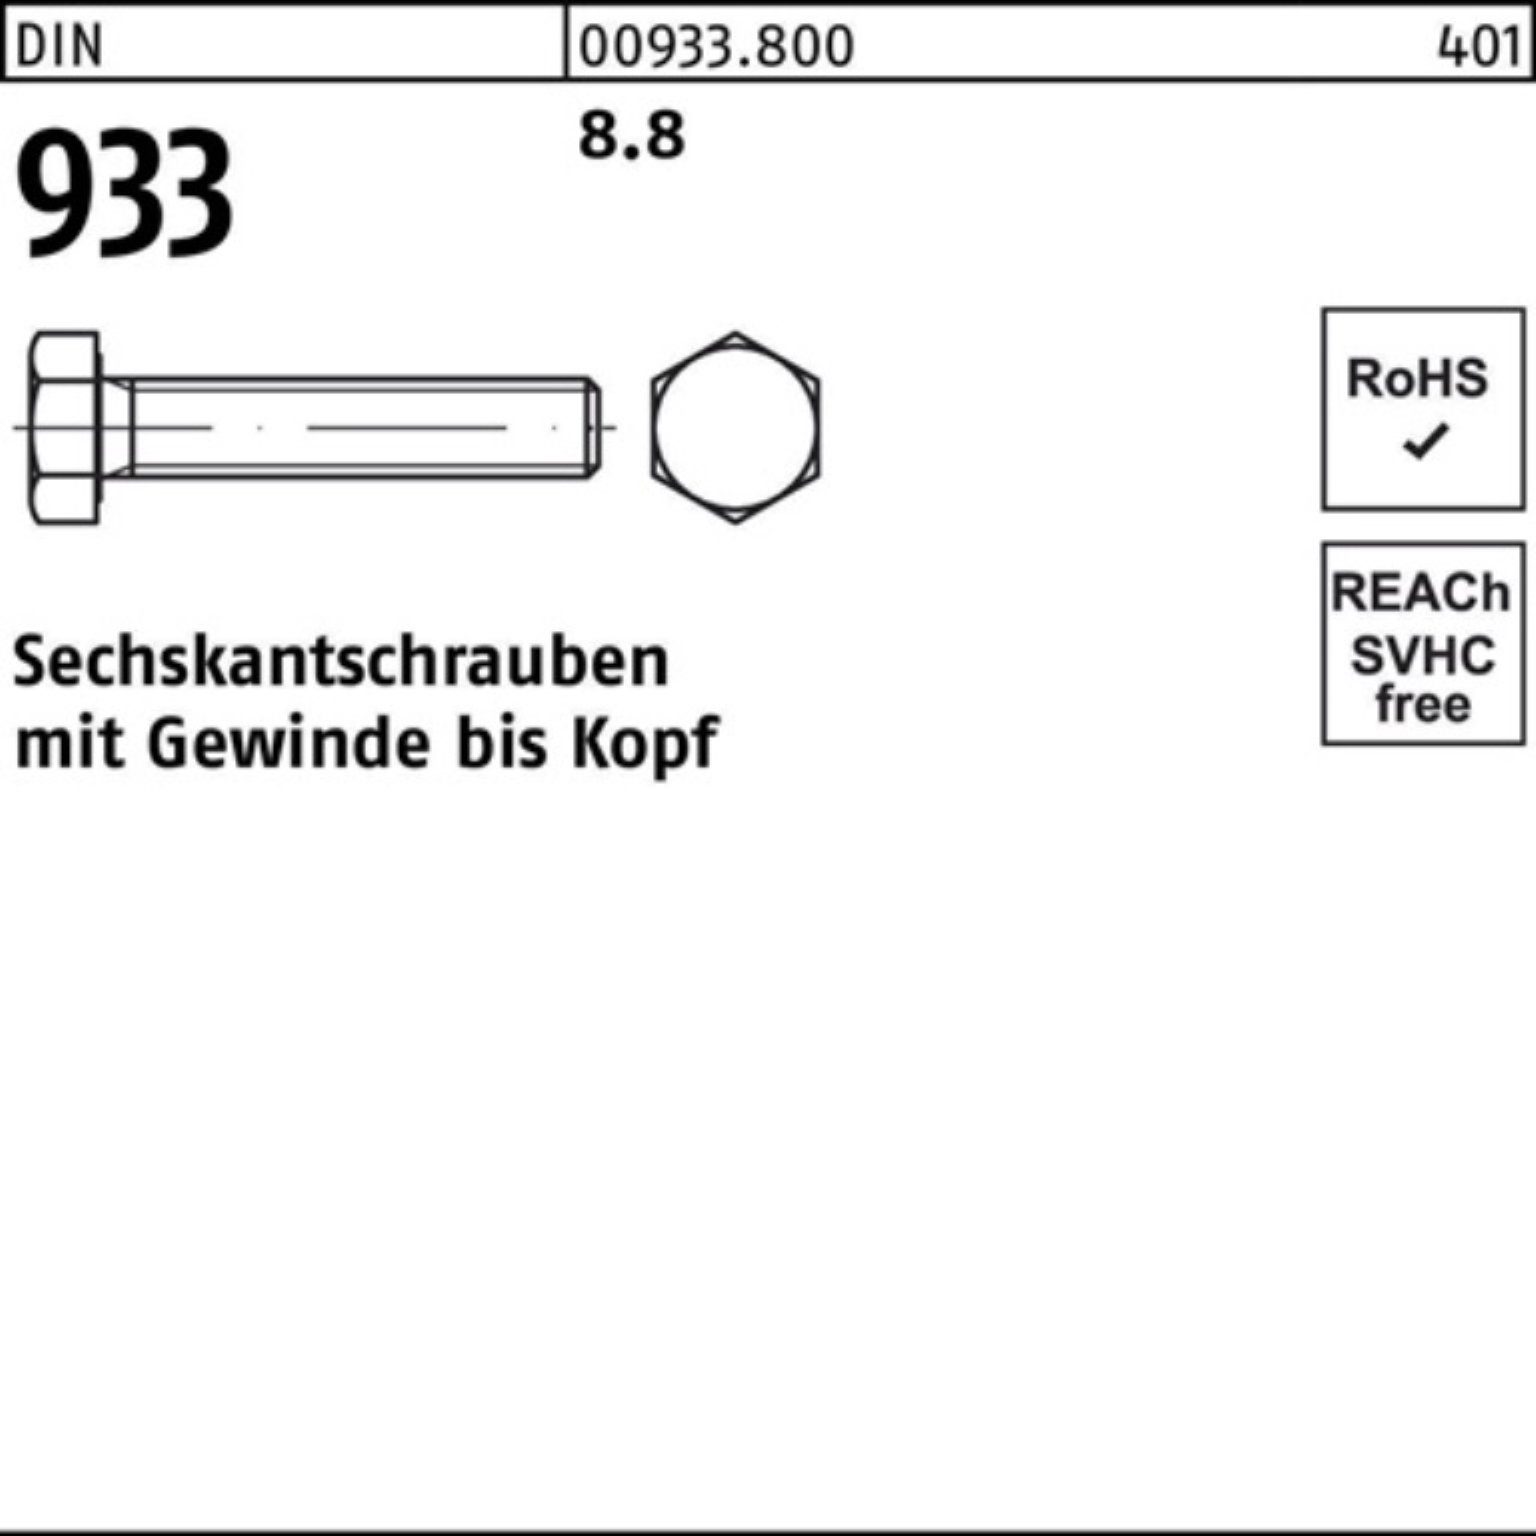 Reyher Sechskantschraube 8.8 933 Pack Stück 933 Sechskantschraube DIN M42x VG 1 180 100er DIN